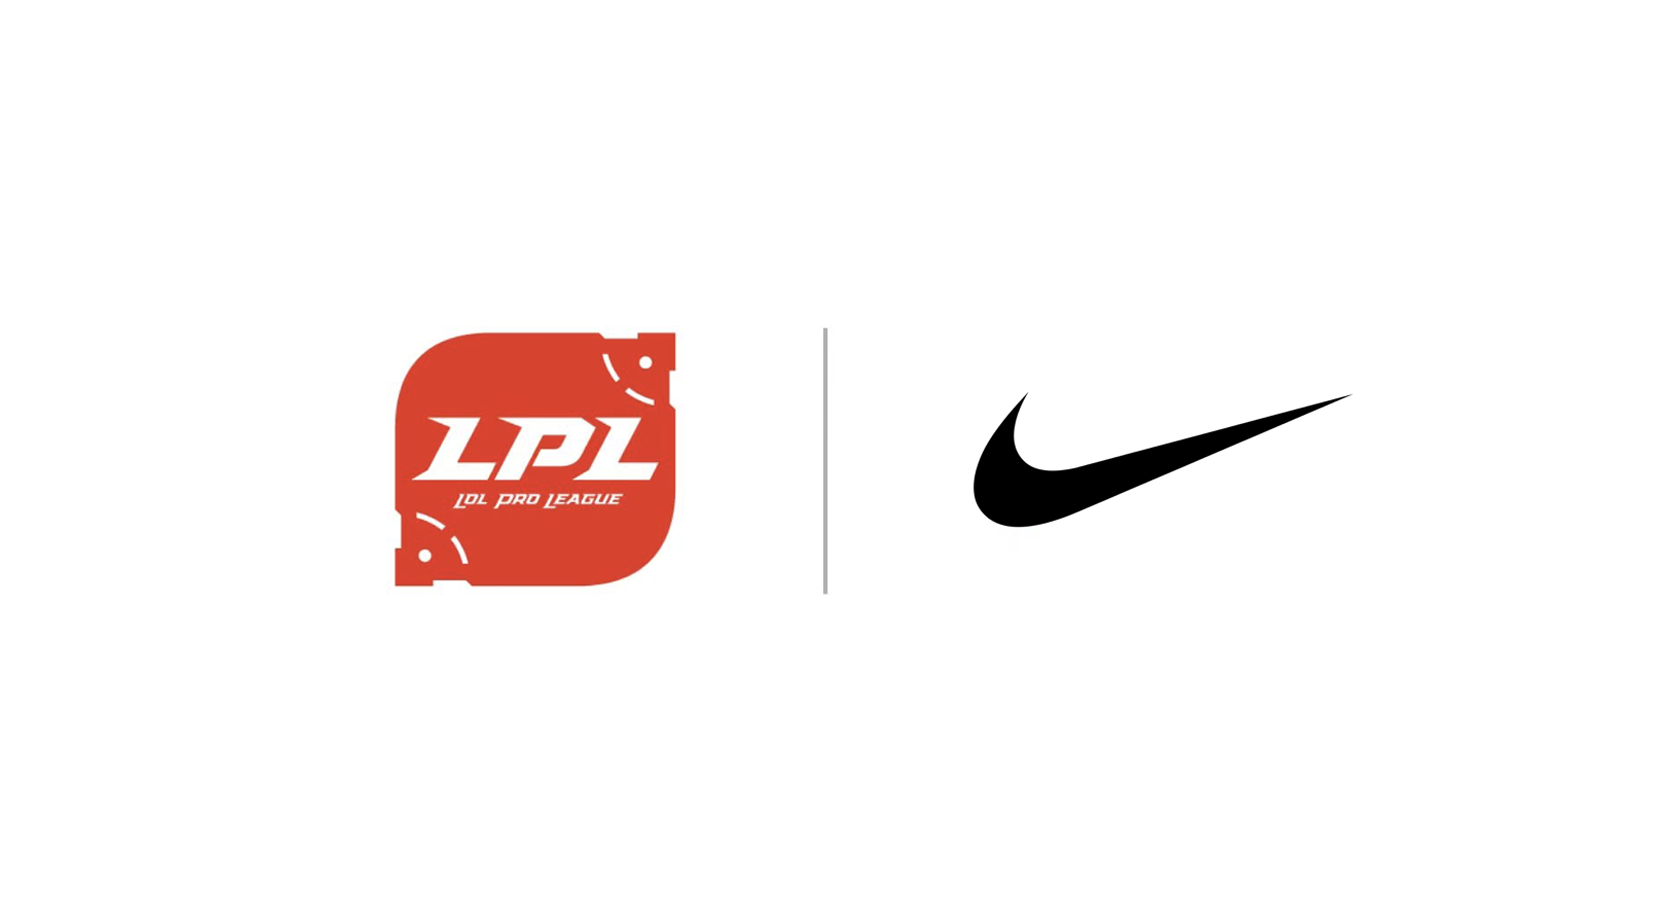 Source: Nike, LPL